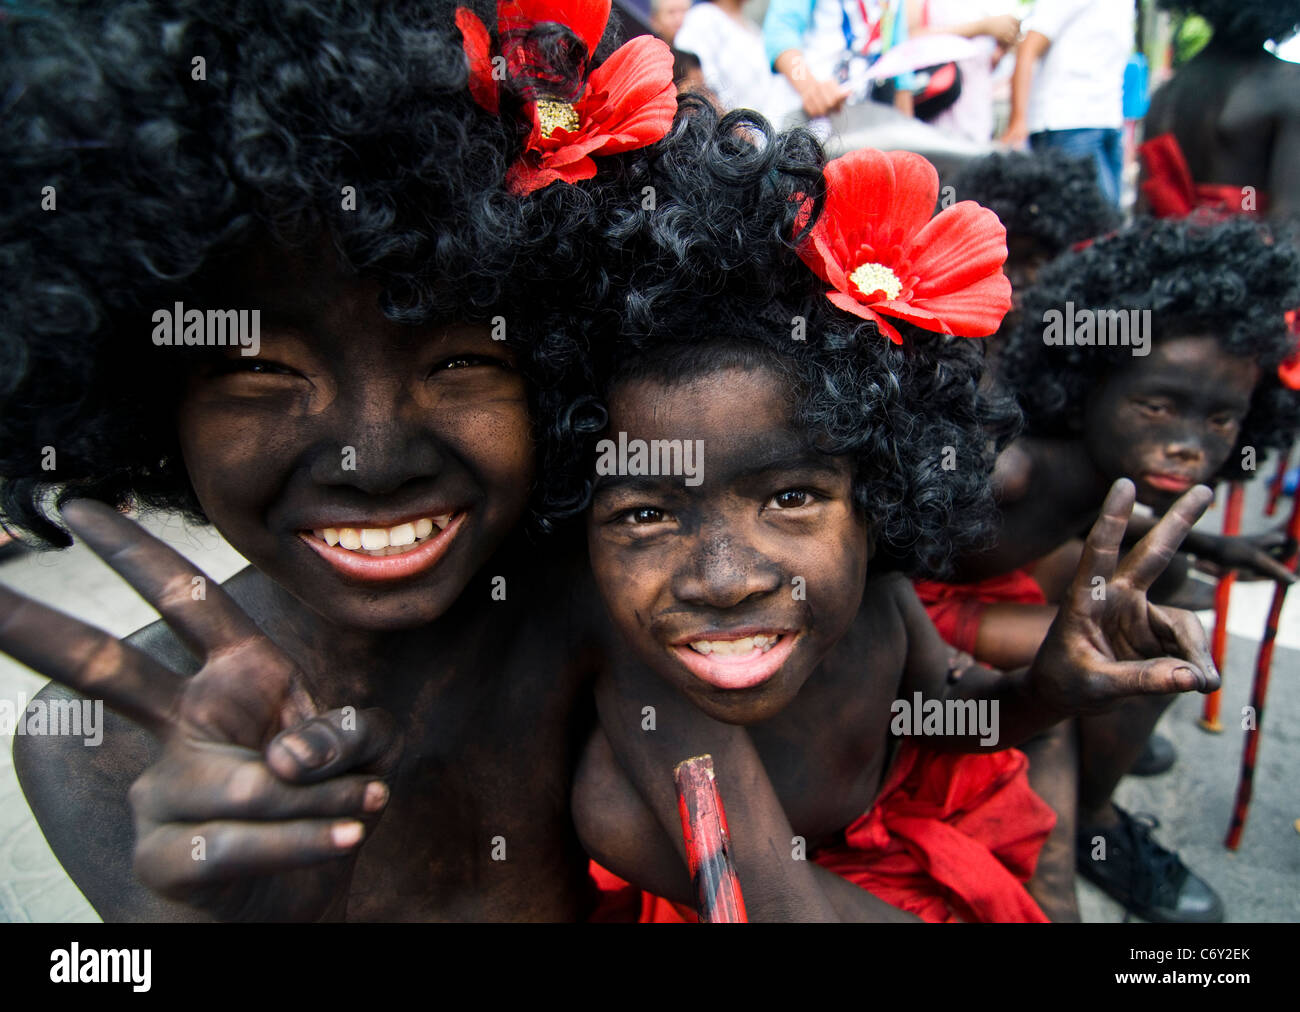 Les garçons thaïlandais Afro qui pose pour une photo lors d'un festival haut en couleurs. Banque D'Images